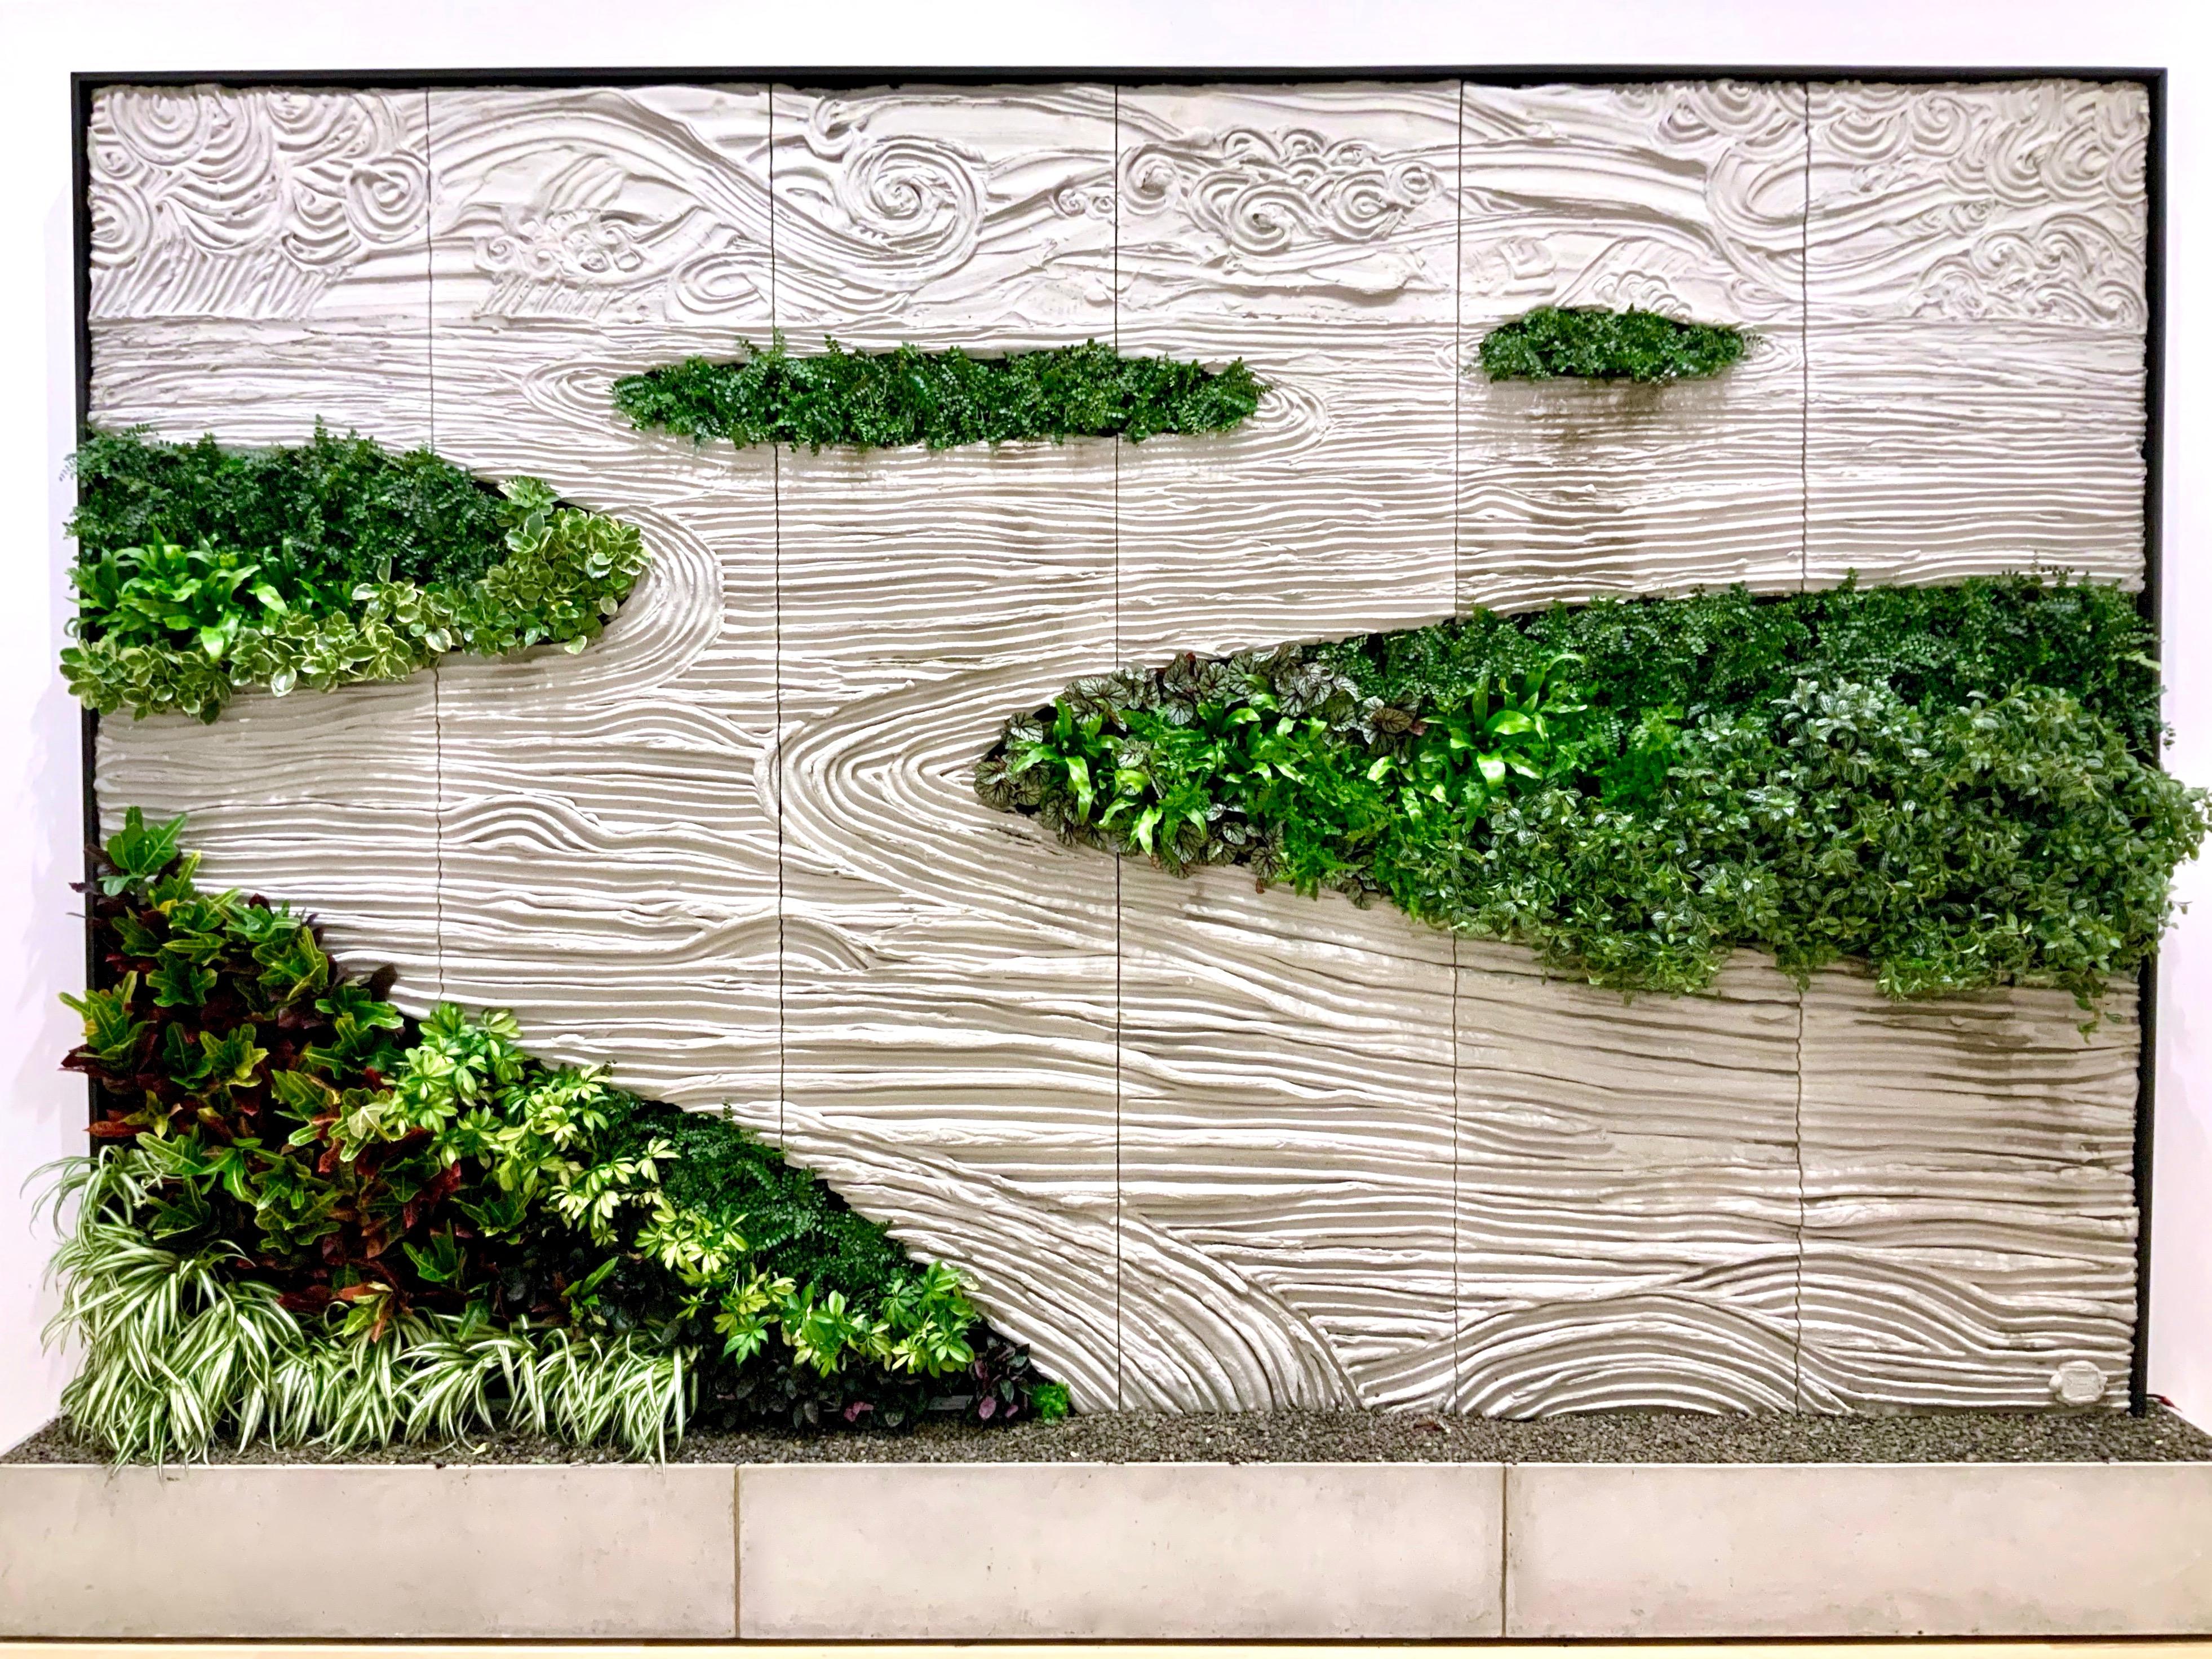 Ce mur vert s'inspire de la logique de conception du monde naturel et des jardins zen traditionnels japonais. Chaque mur personnalisé est disponible avec des plantes en soie vivantes ou artificielles. Les murs vivants sont réalisés avec des systèmes